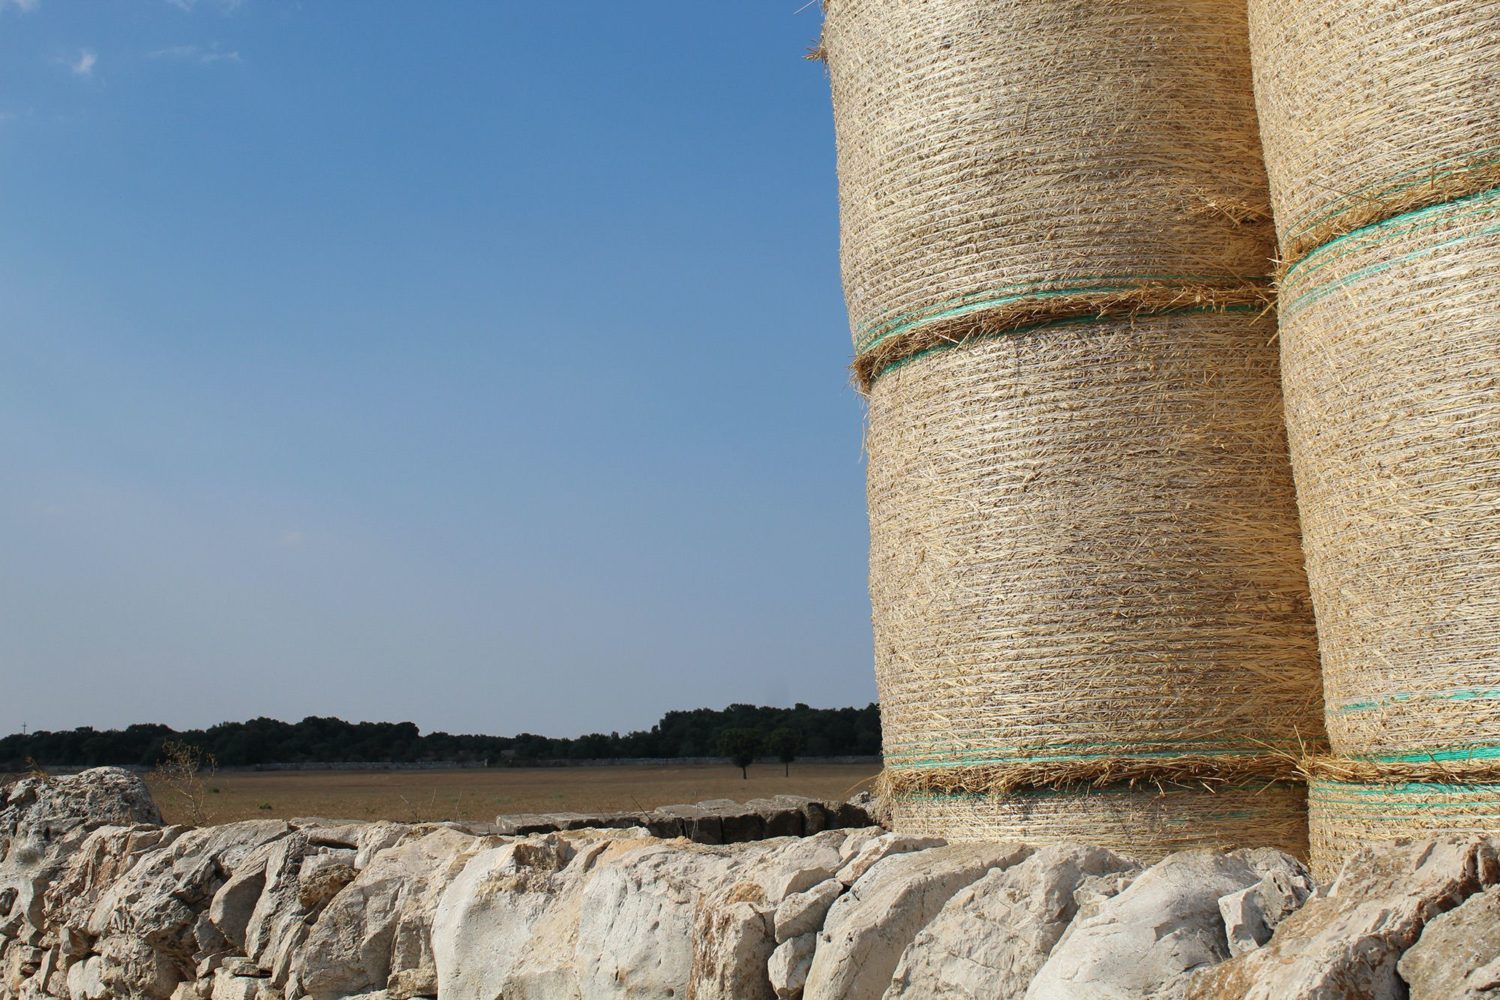 Grain production in Puglia